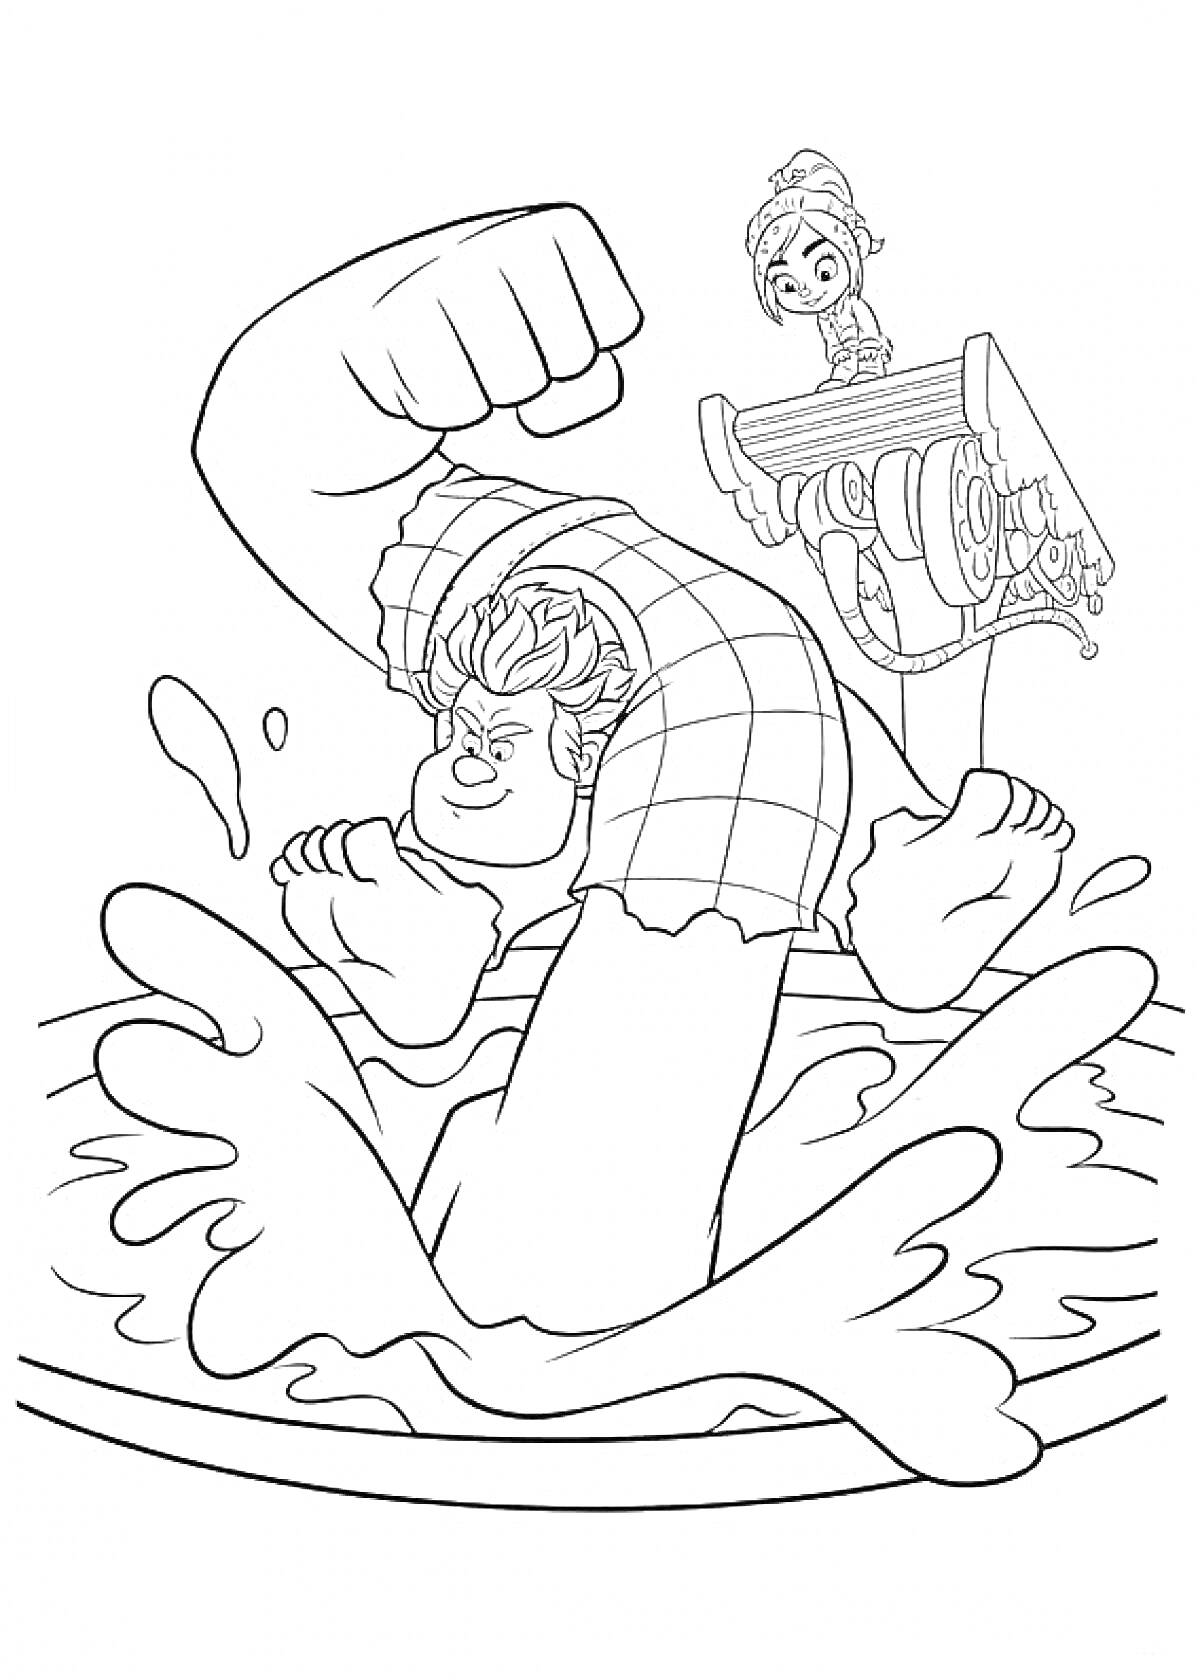 Раскраска Ральф в бассейне, прыжок в воду, Ванилопа на краю бассейна